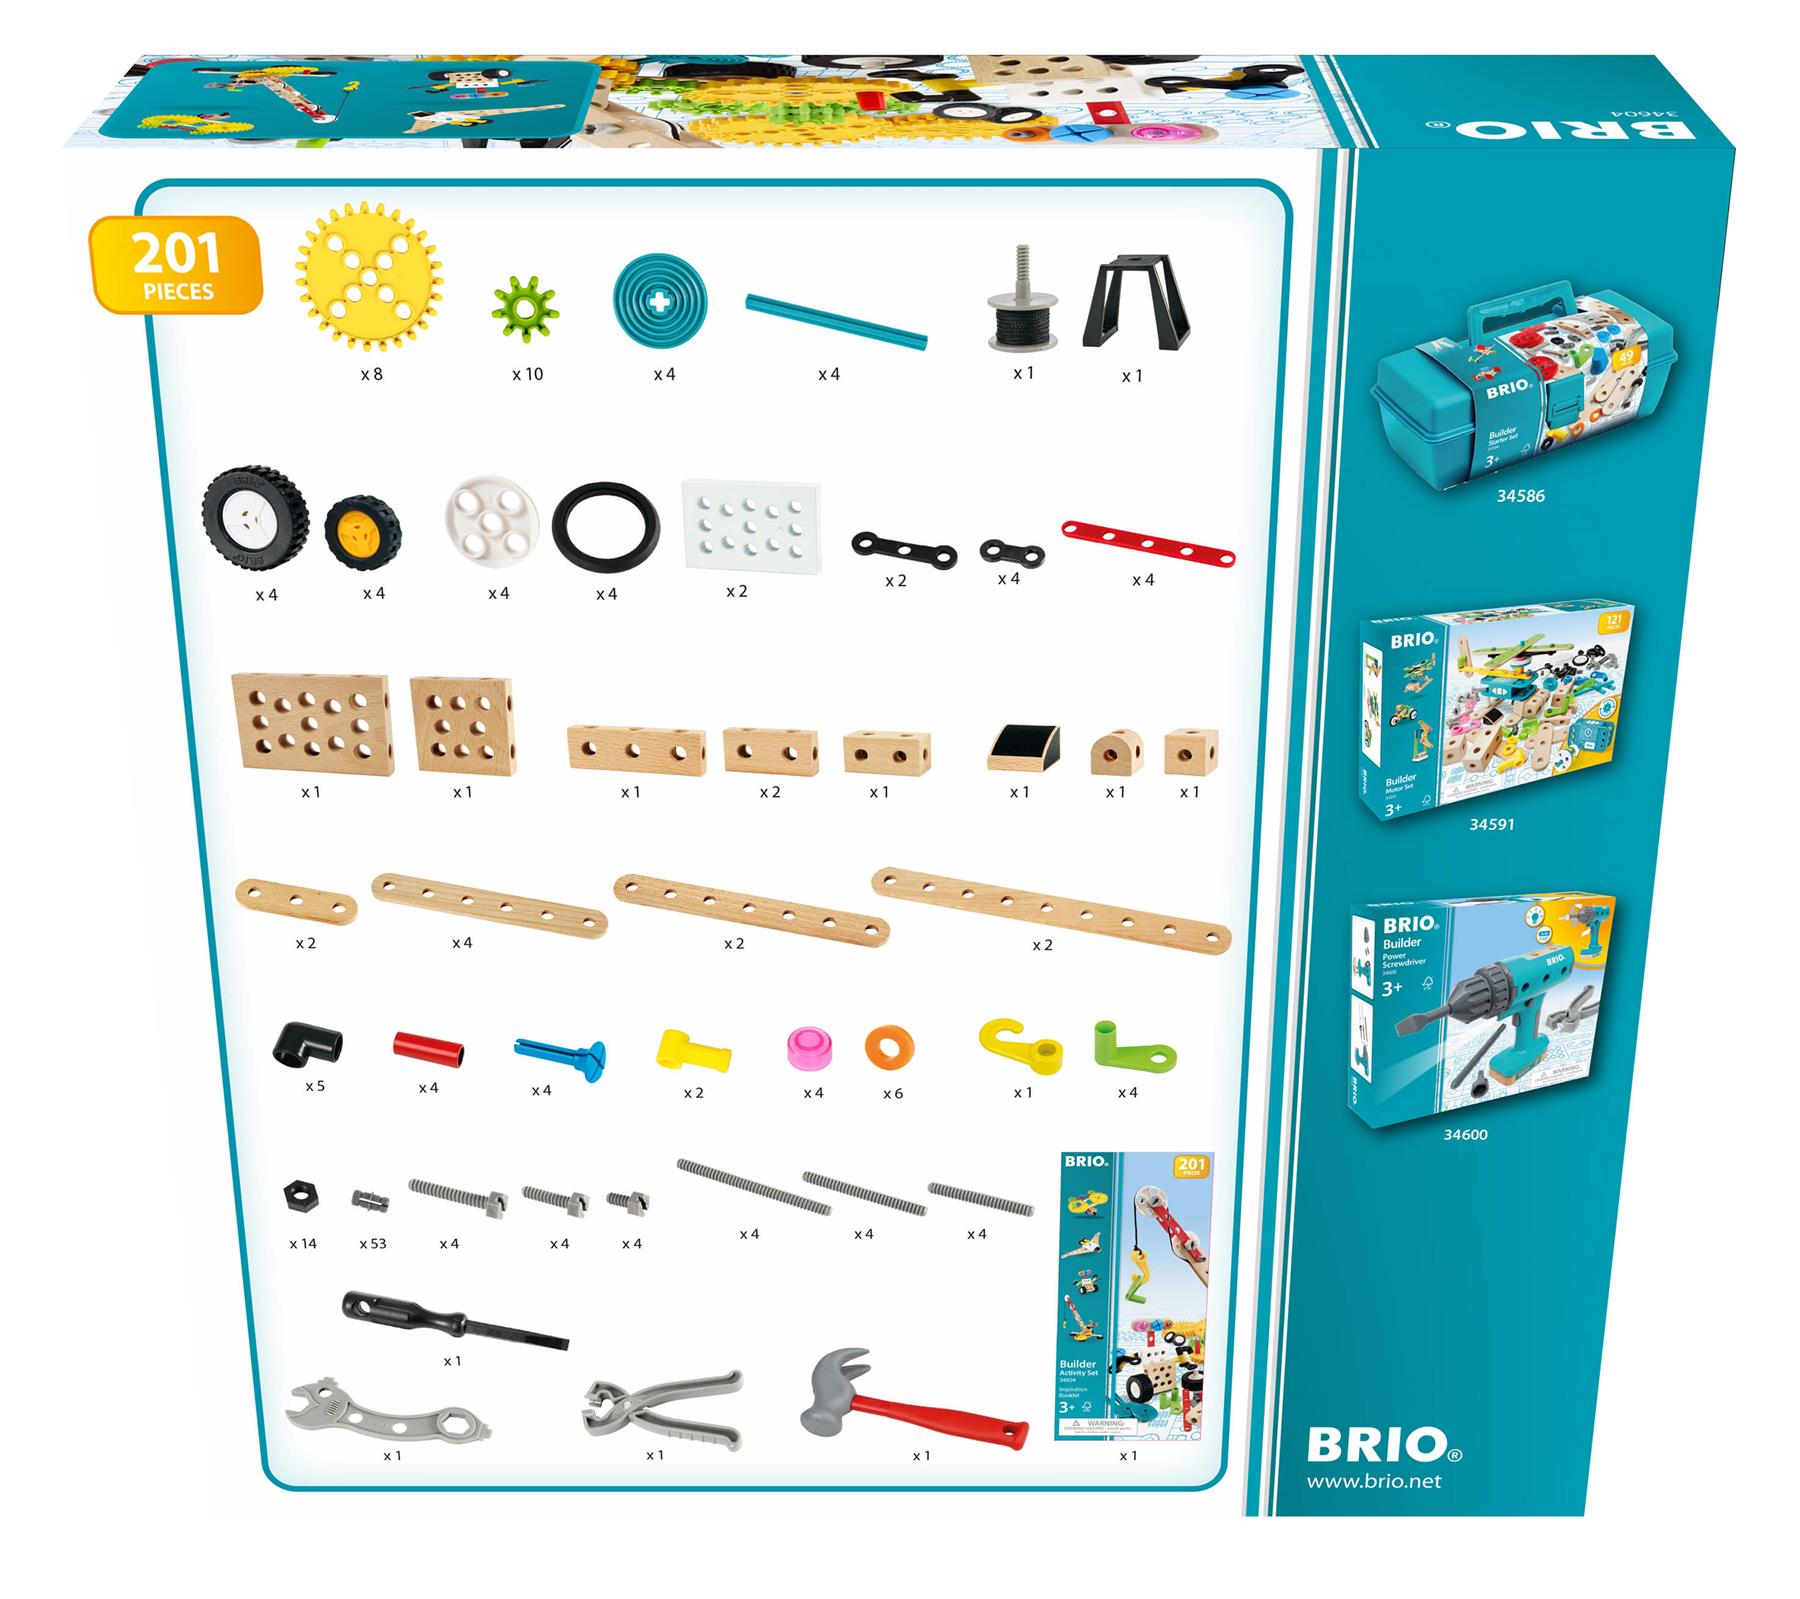 Brio Builder 34604 Activity Set